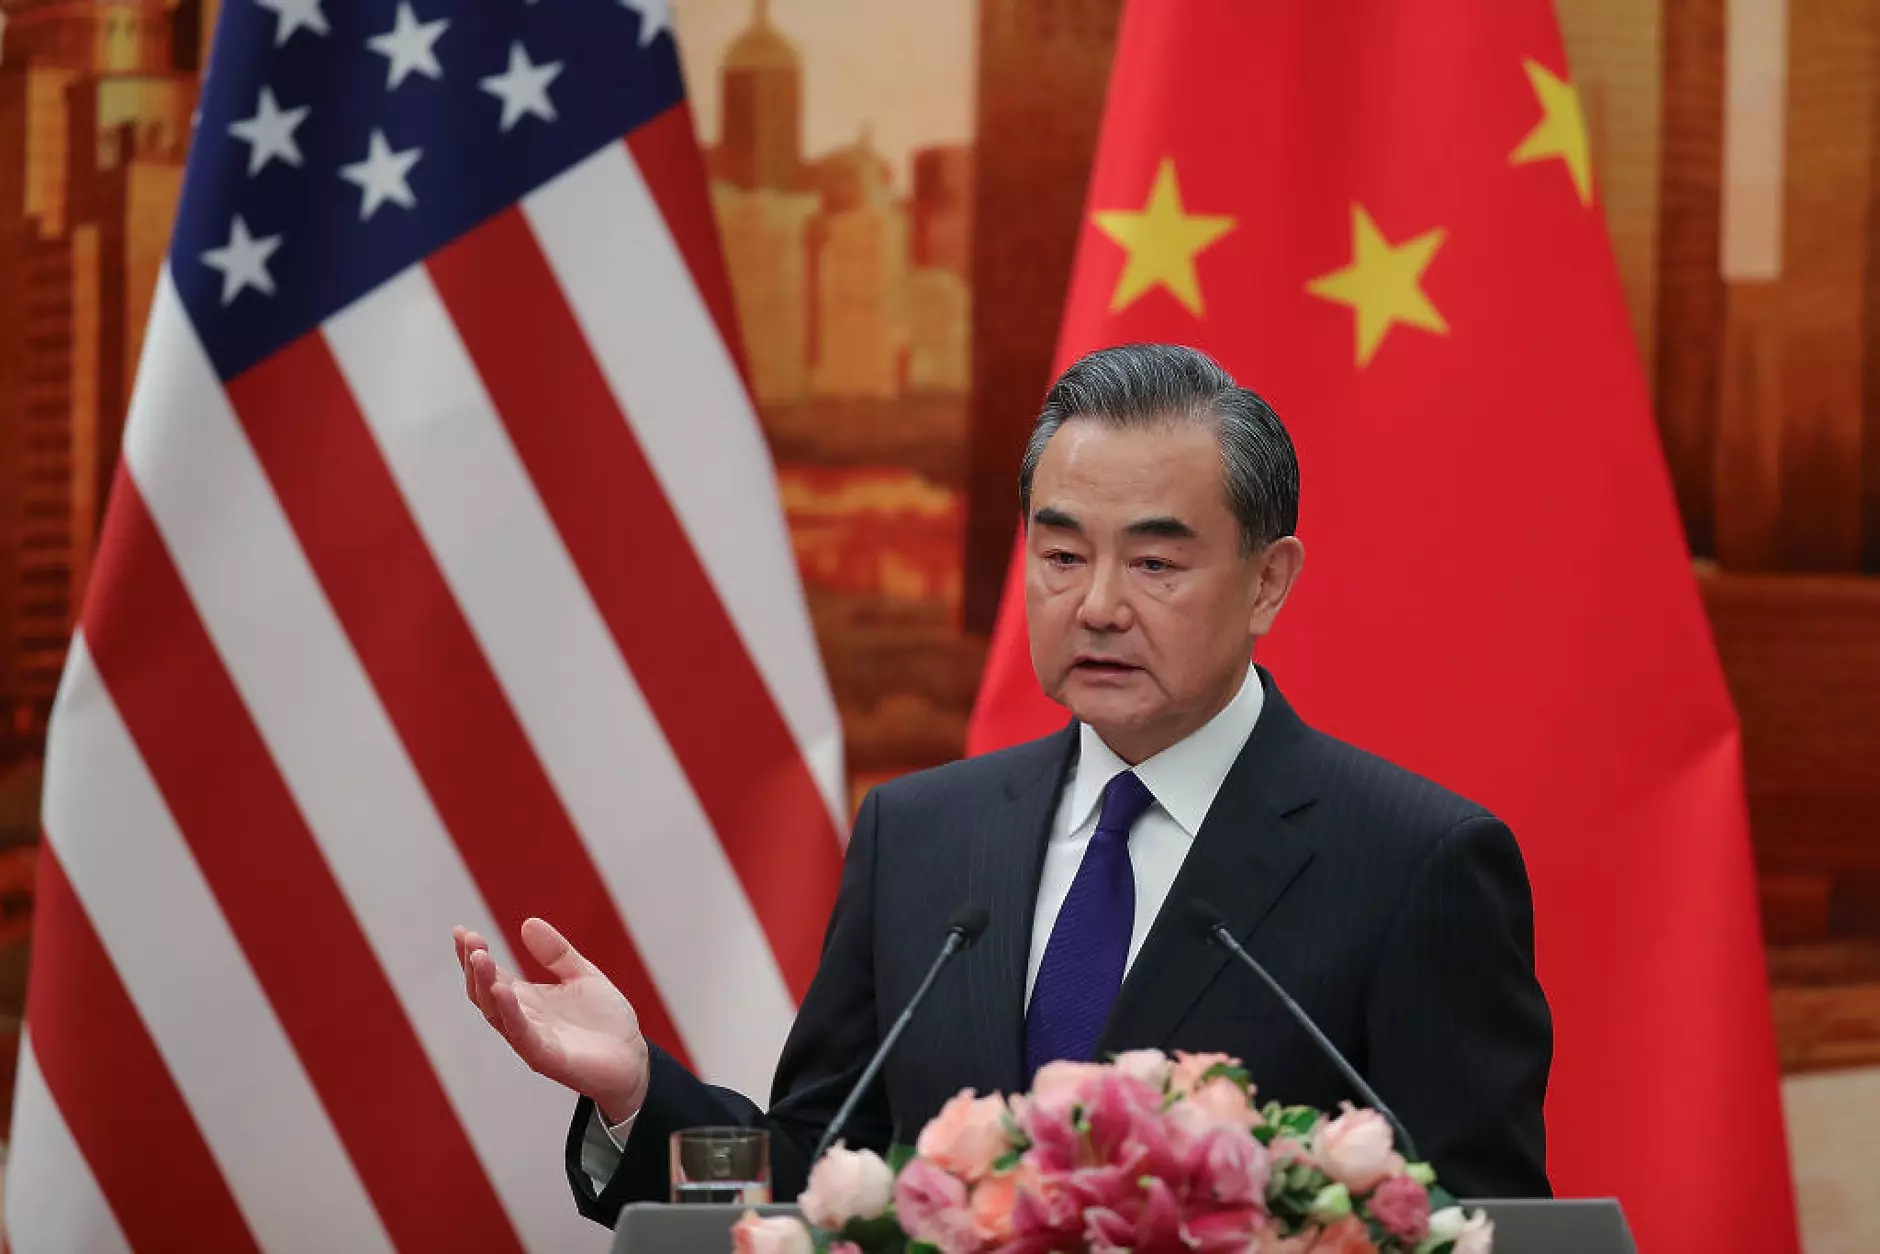 Пекин и Вашингтон да се стремят към диалог, а не към конфронтация, призова китайски топ дипломат